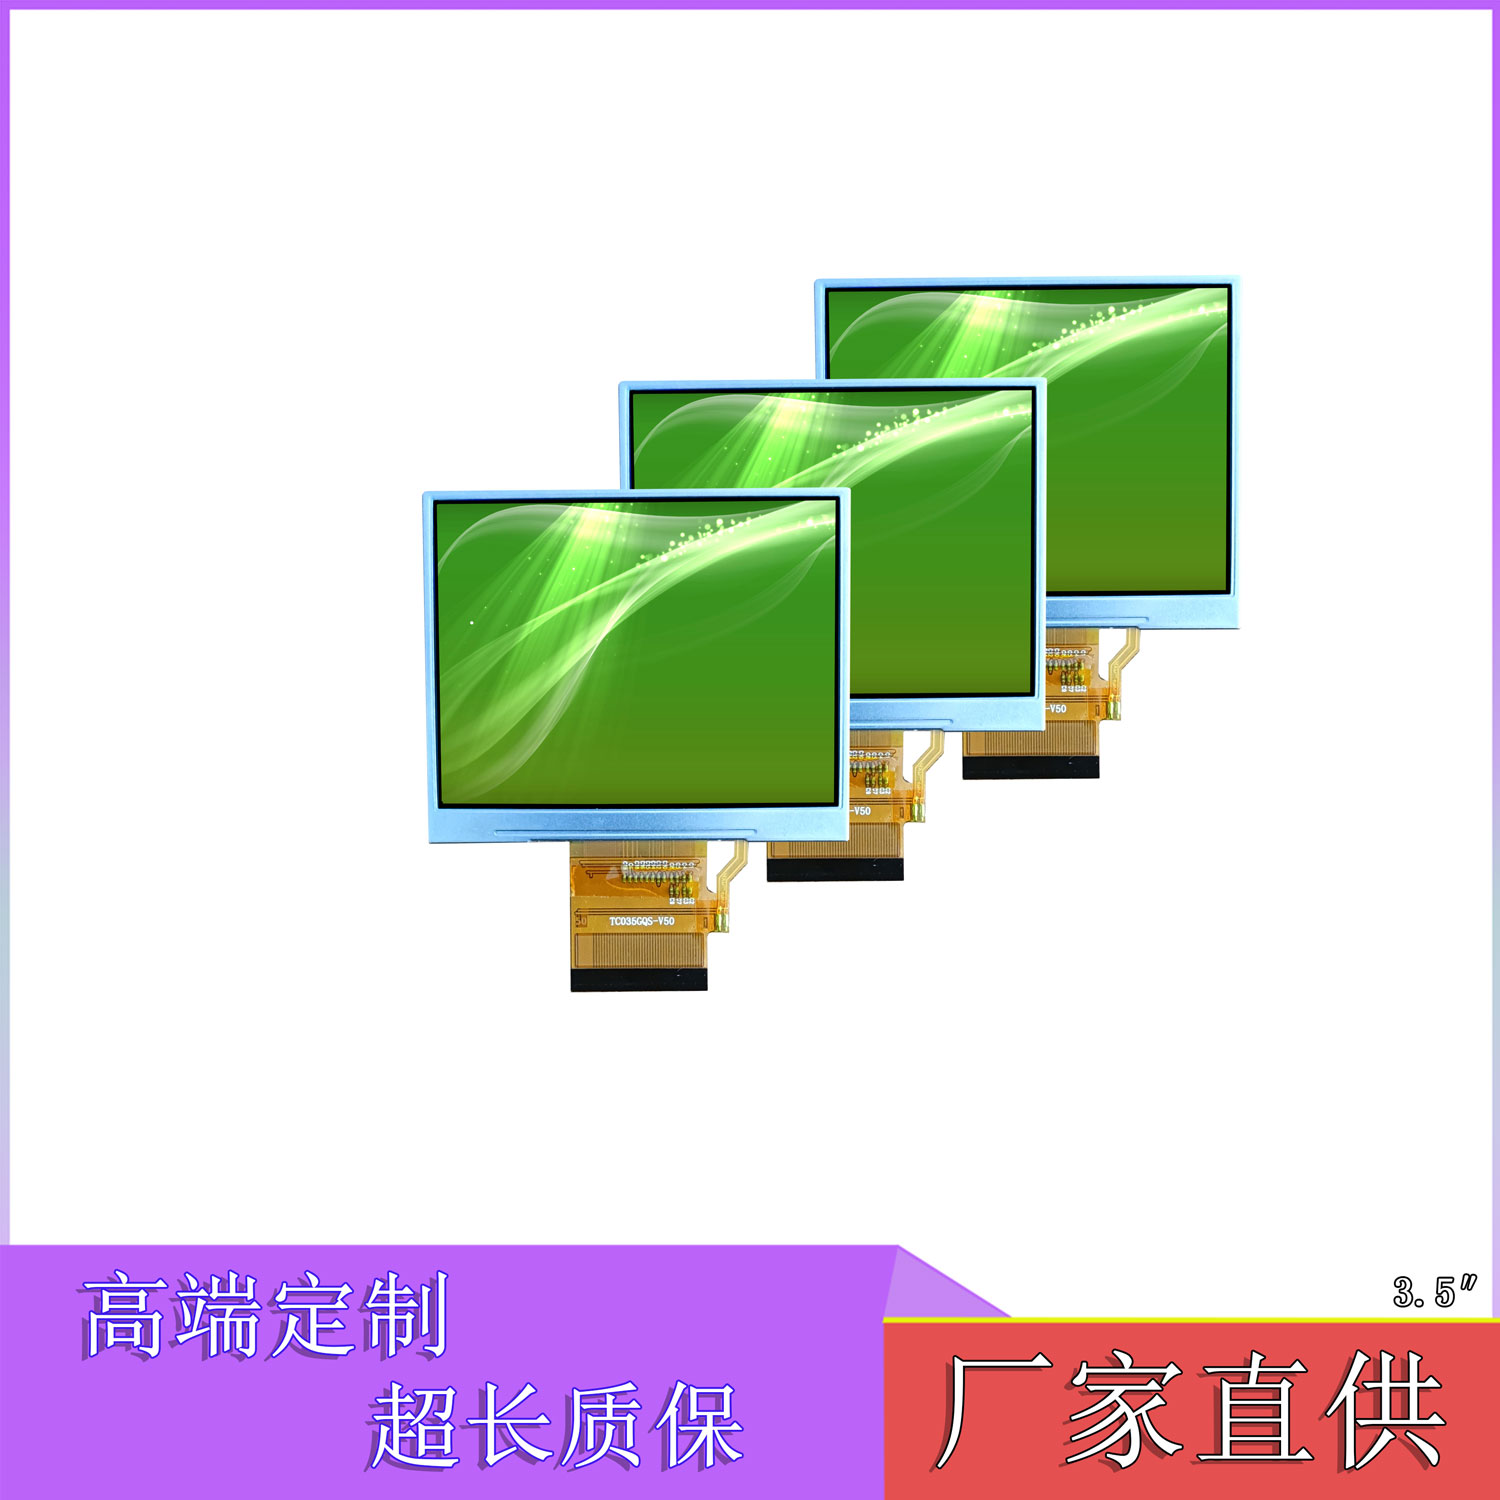 西藏拉萨青海西宁3.5寸橫屏MCU仿凌巨SSD2119温控器继电器门铃86盒POS机婴儿监控屏